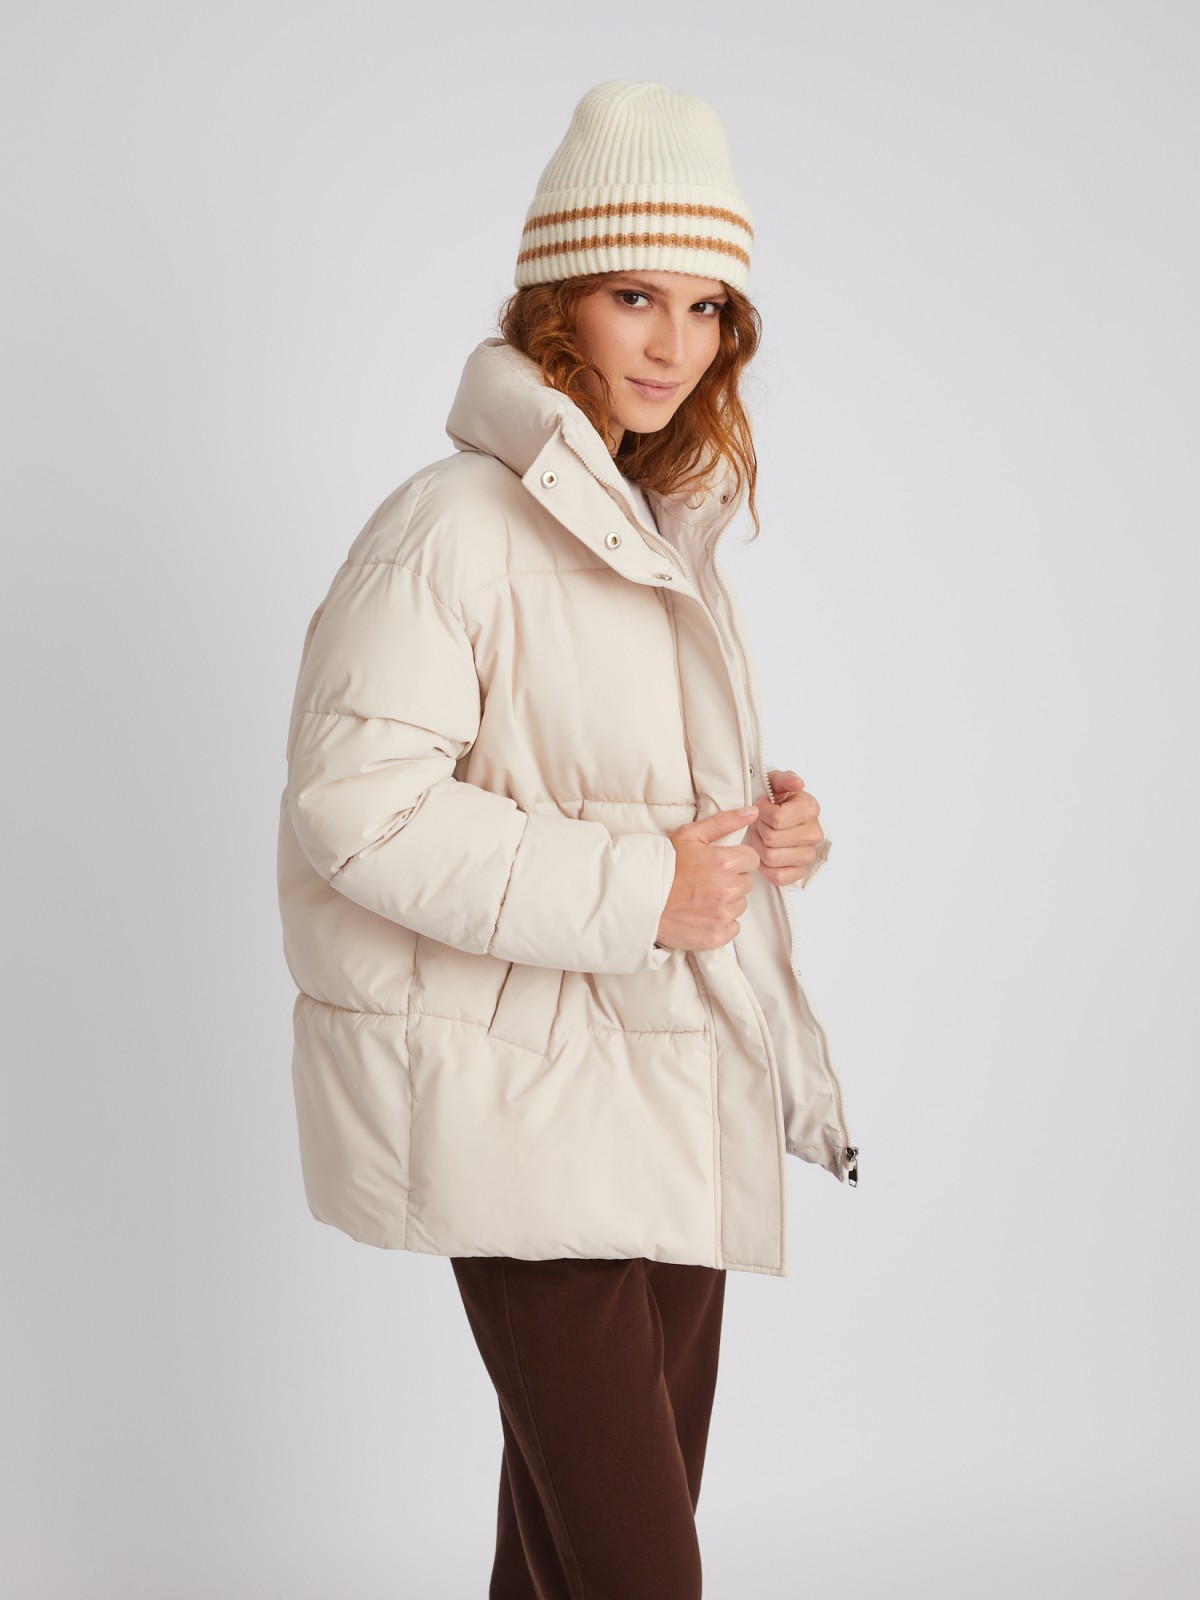 Тёплая стёганая дутая куртка оверсайз силуэта с высоким воротником zolla 023335102074, цвет молоко, размер S - фото 1